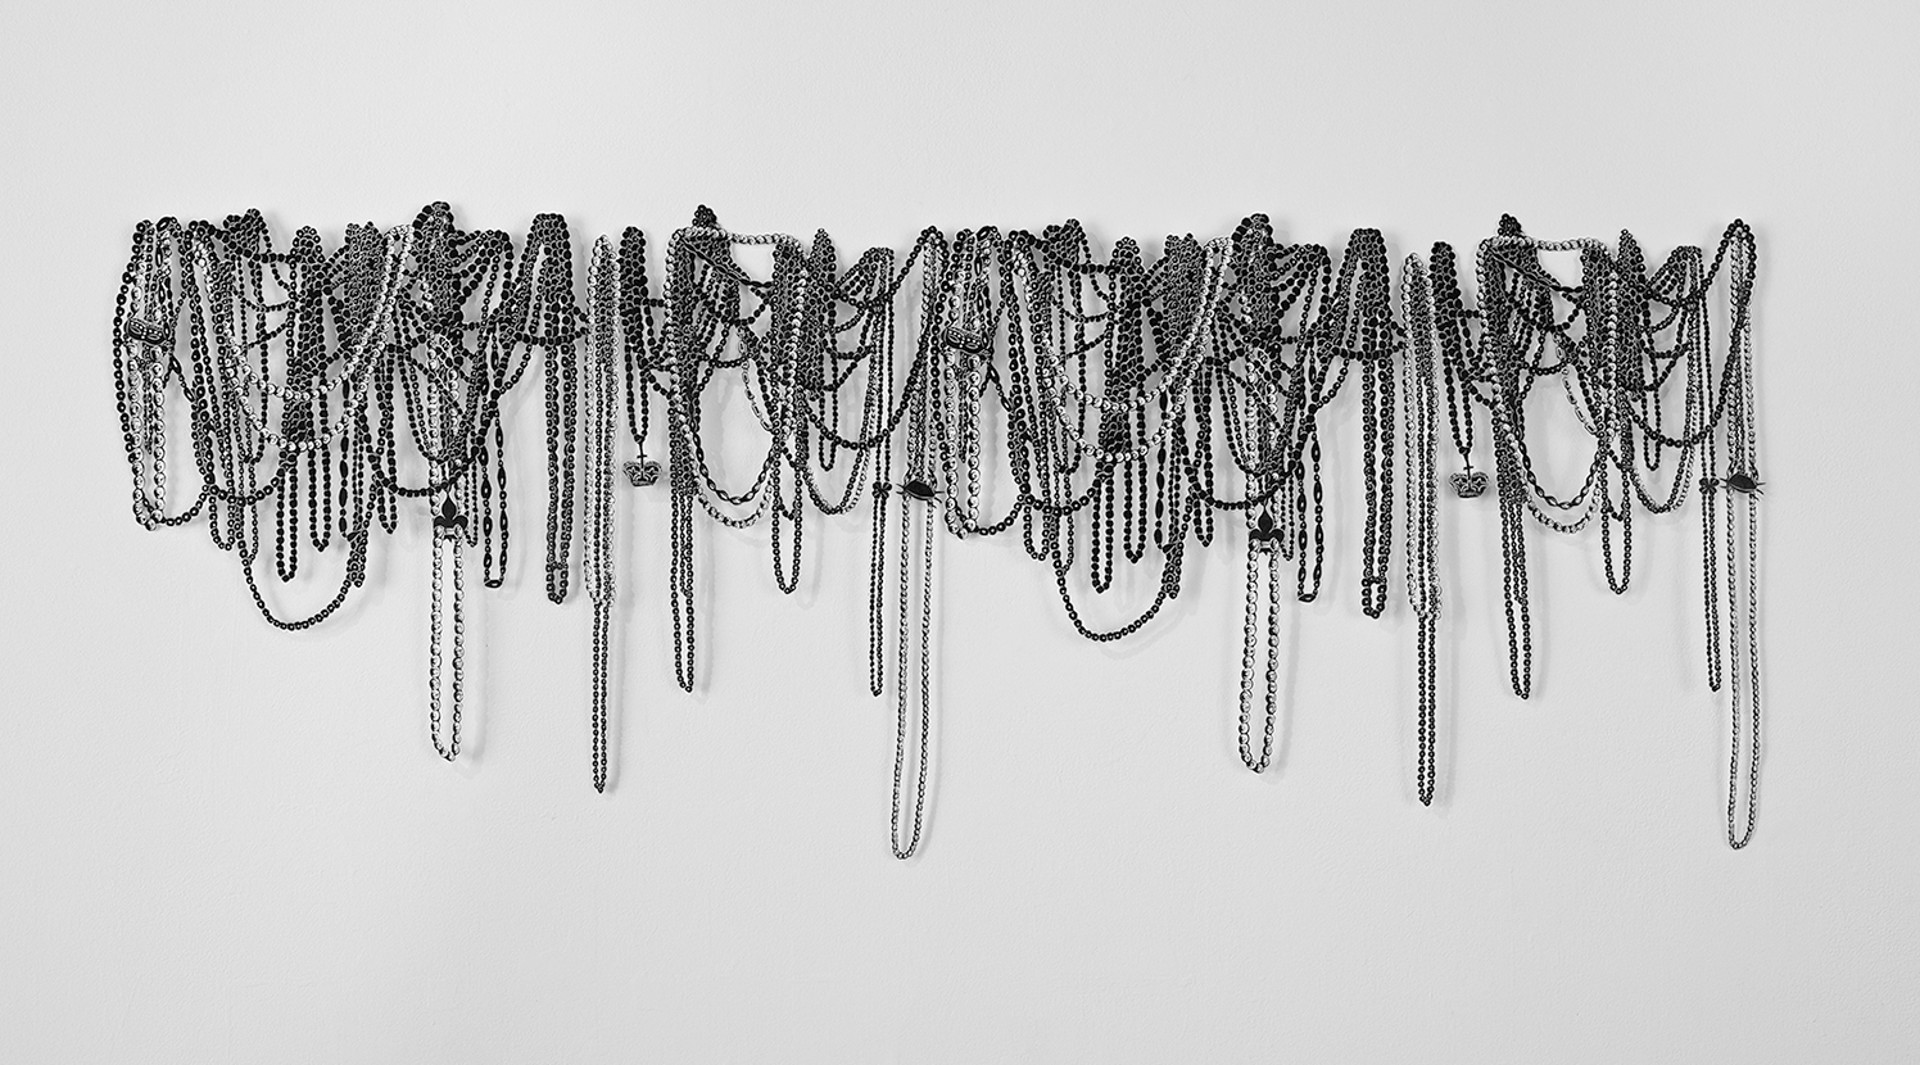 Hanging Beads by Masy Hebert Chighizola